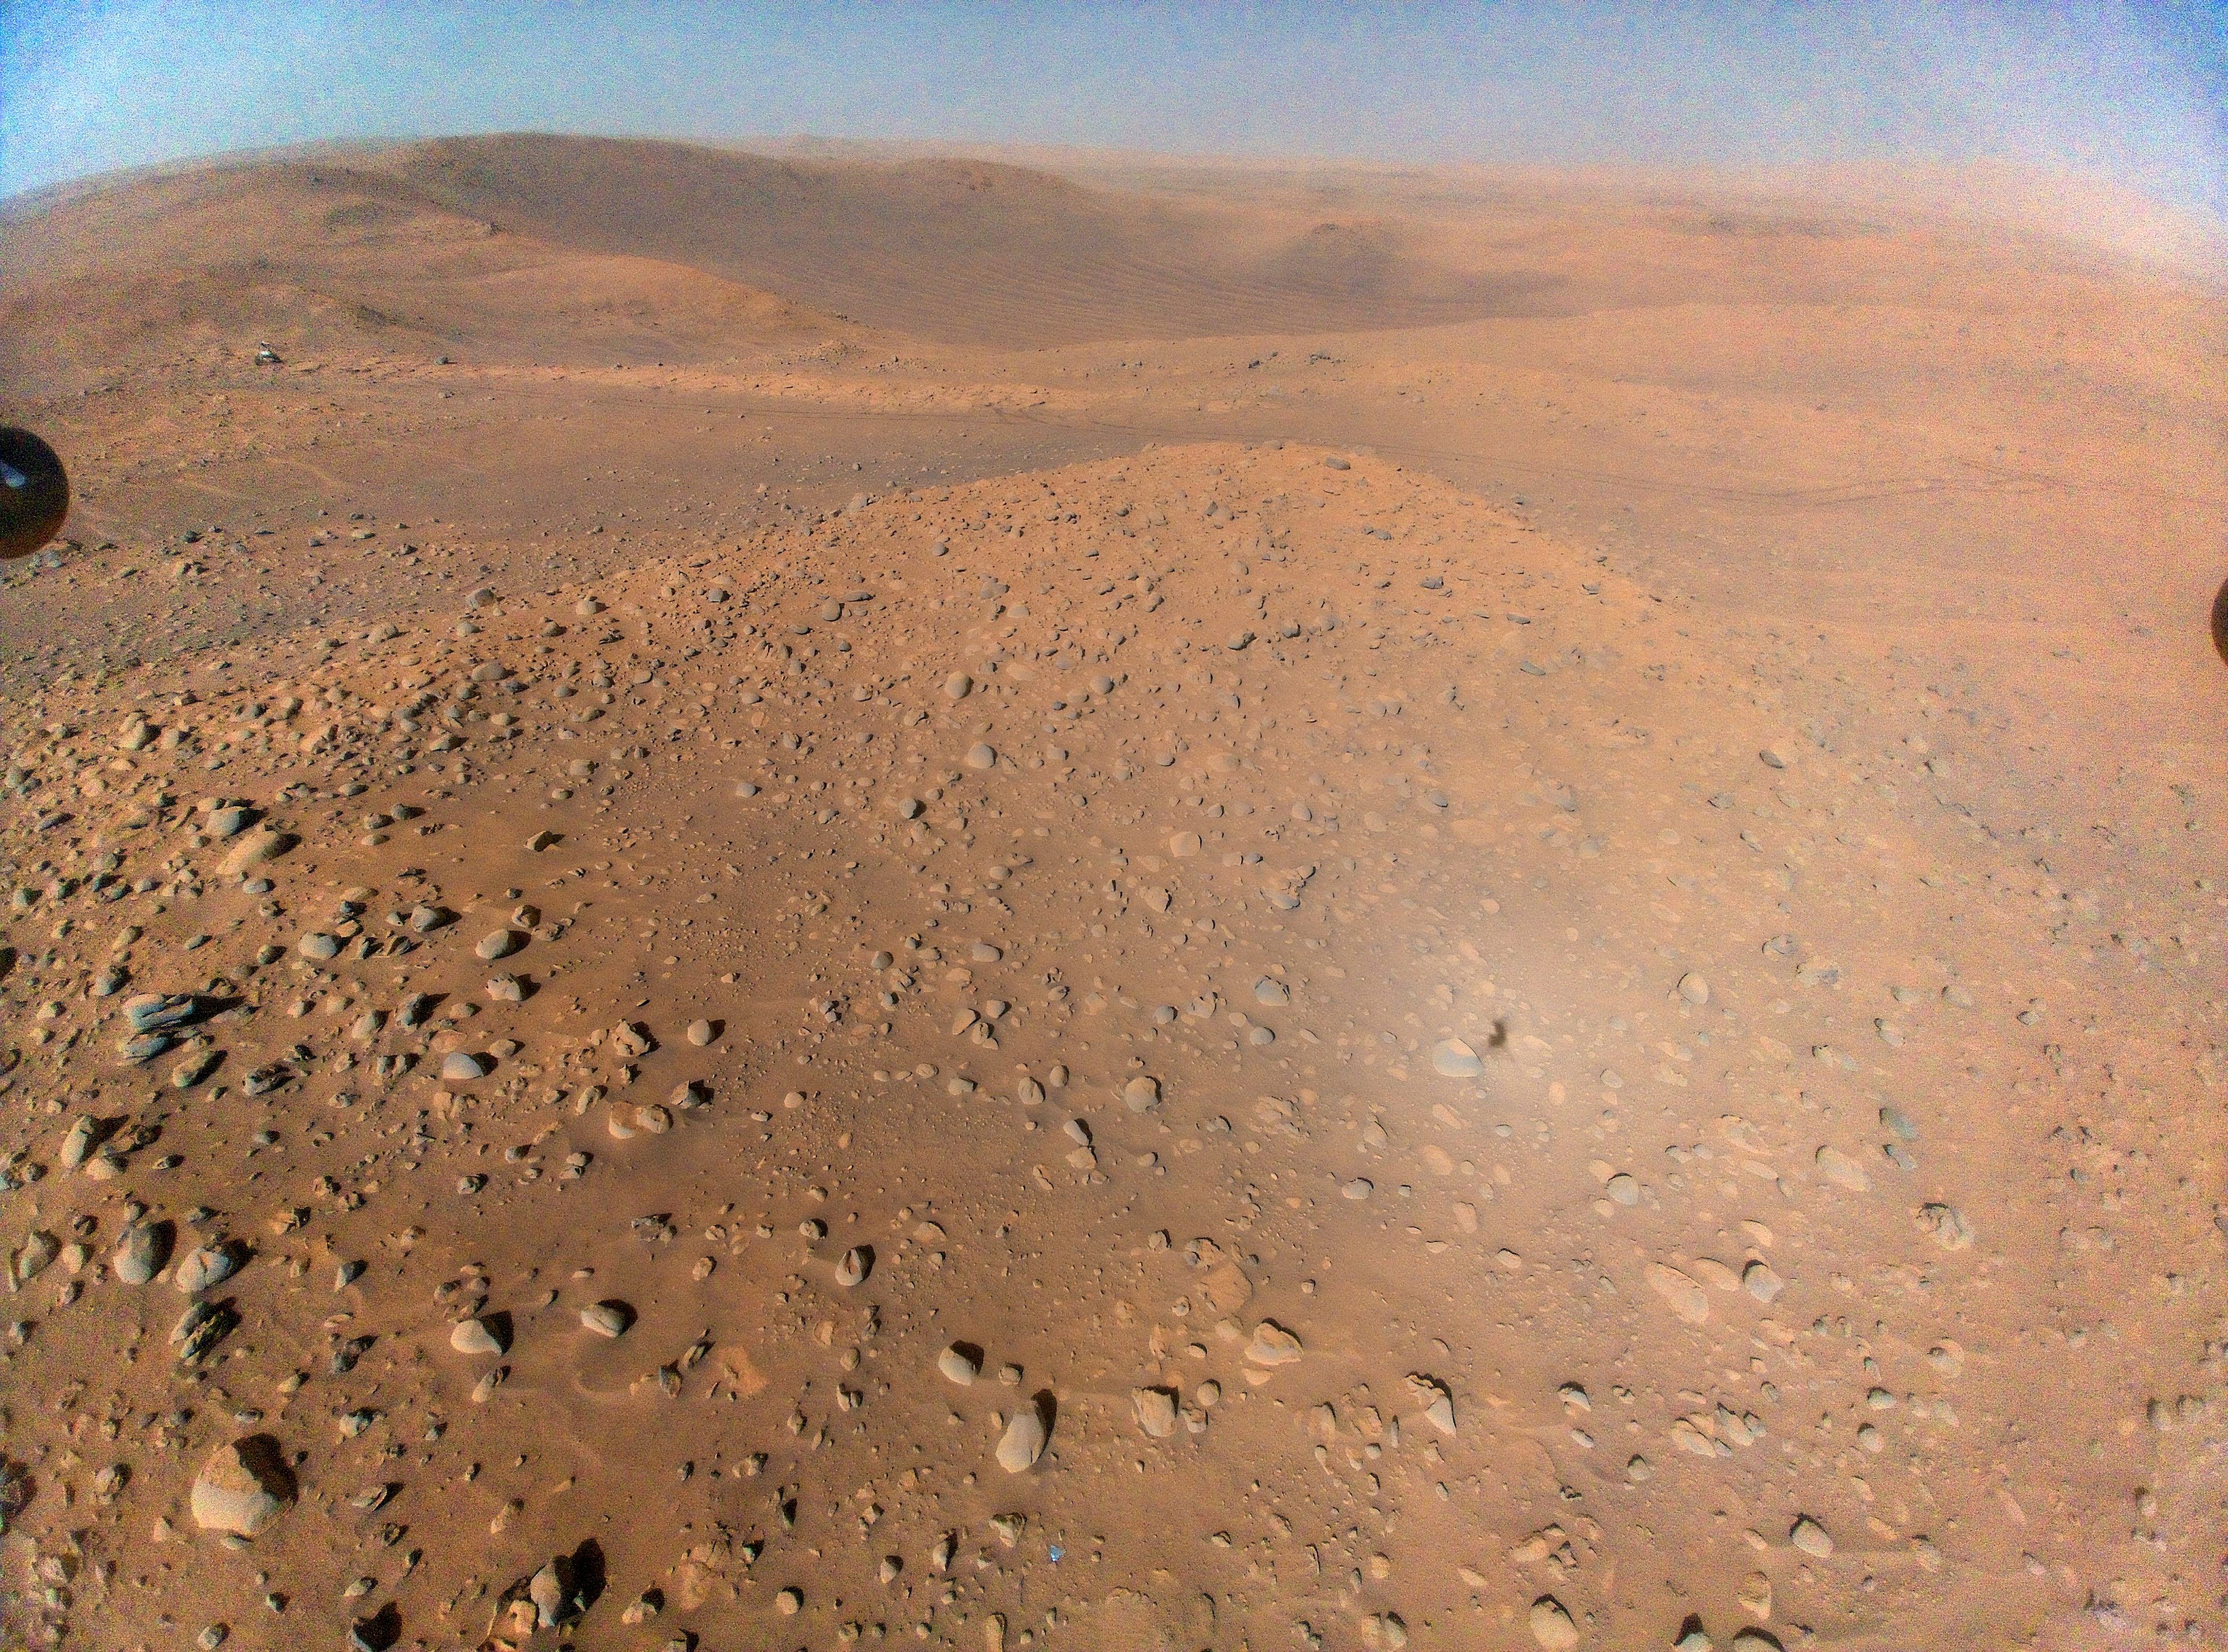 इनजेन्युटी हेलिकॉप्टर द्वारा हवा से ली गई मंगल ग्रह की तस्वीर, जिसमें ऊपर बाईं ओर पर्सिवरेंस रोवर दिखाई दे रहा है।